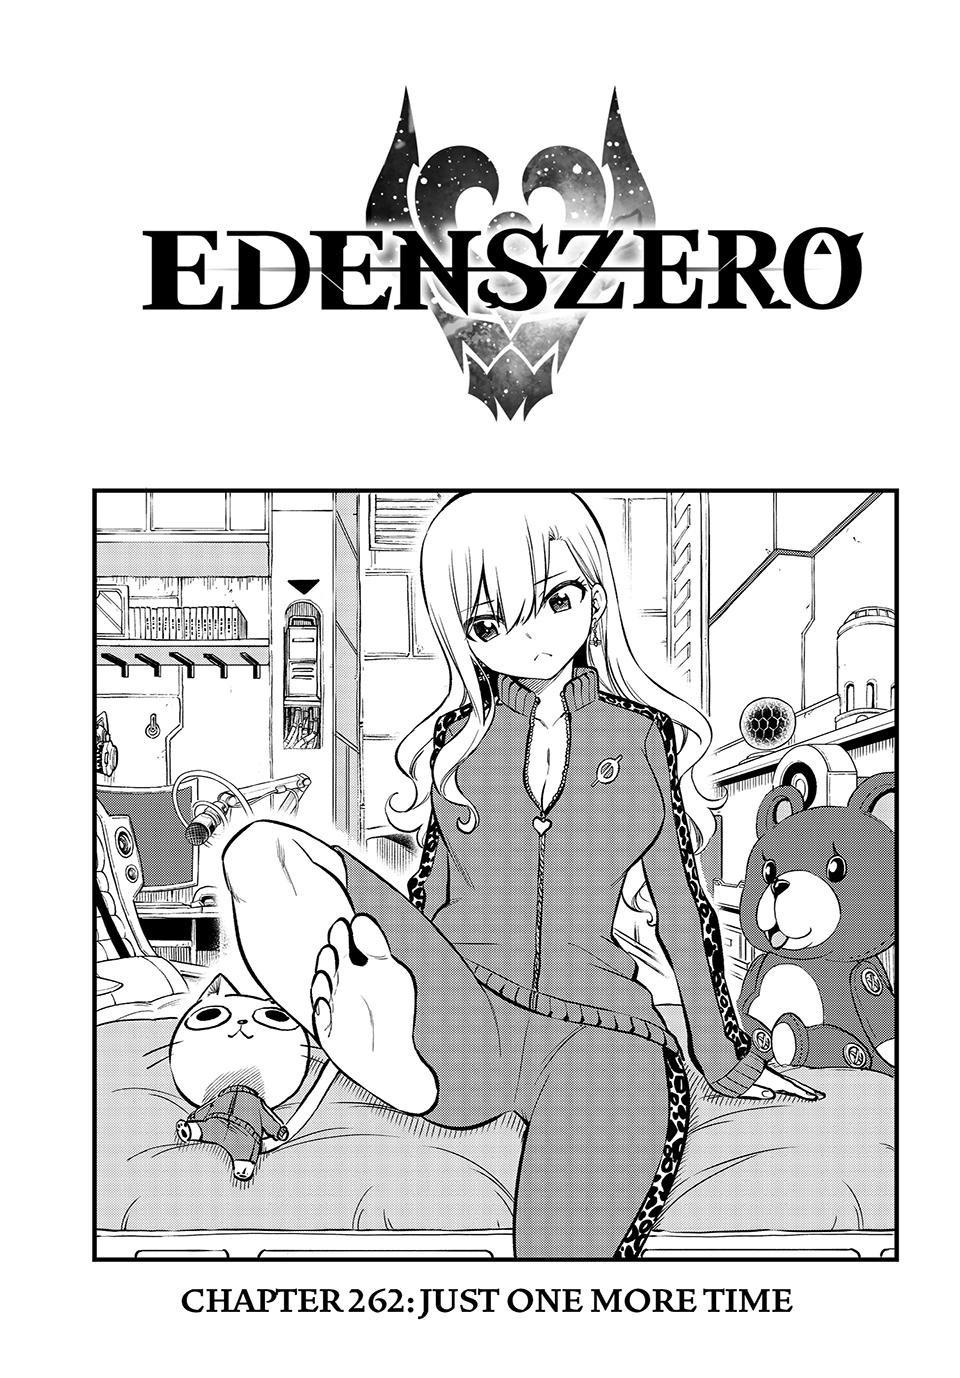 Eden's Zero, Chapter 166 - English Scans